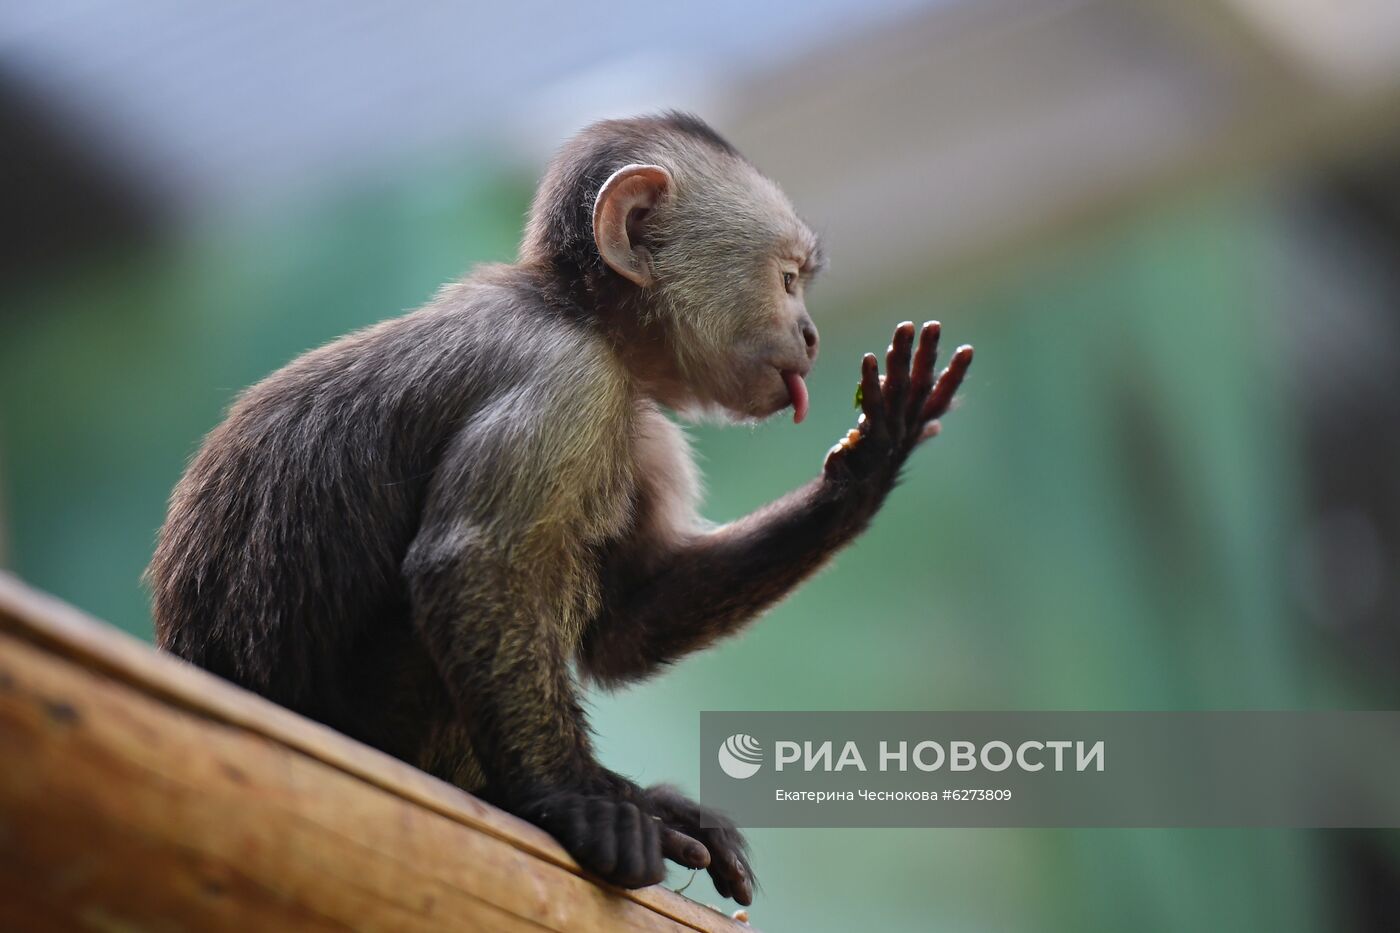 Детеныш капуцина плаксы в Московском зоопарке 